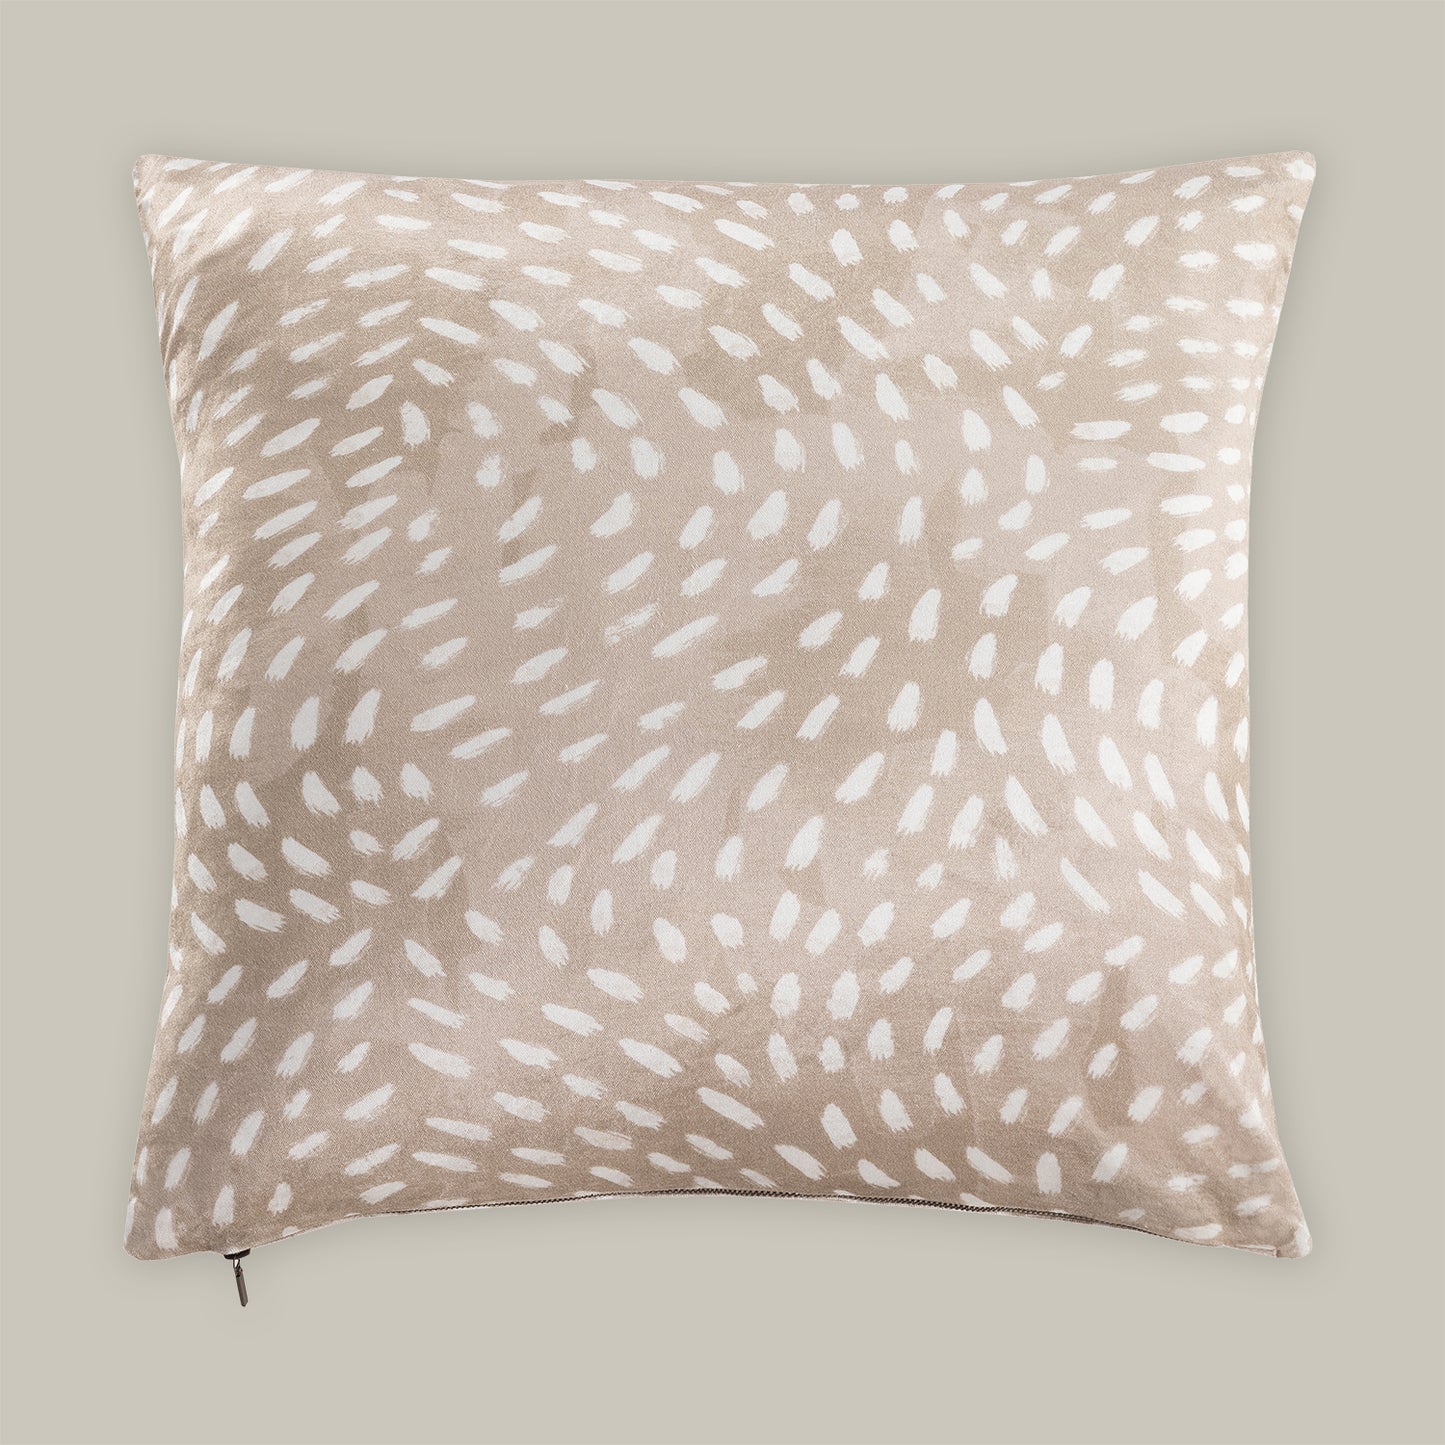 Velvet Les Animaux Decorative Pillow